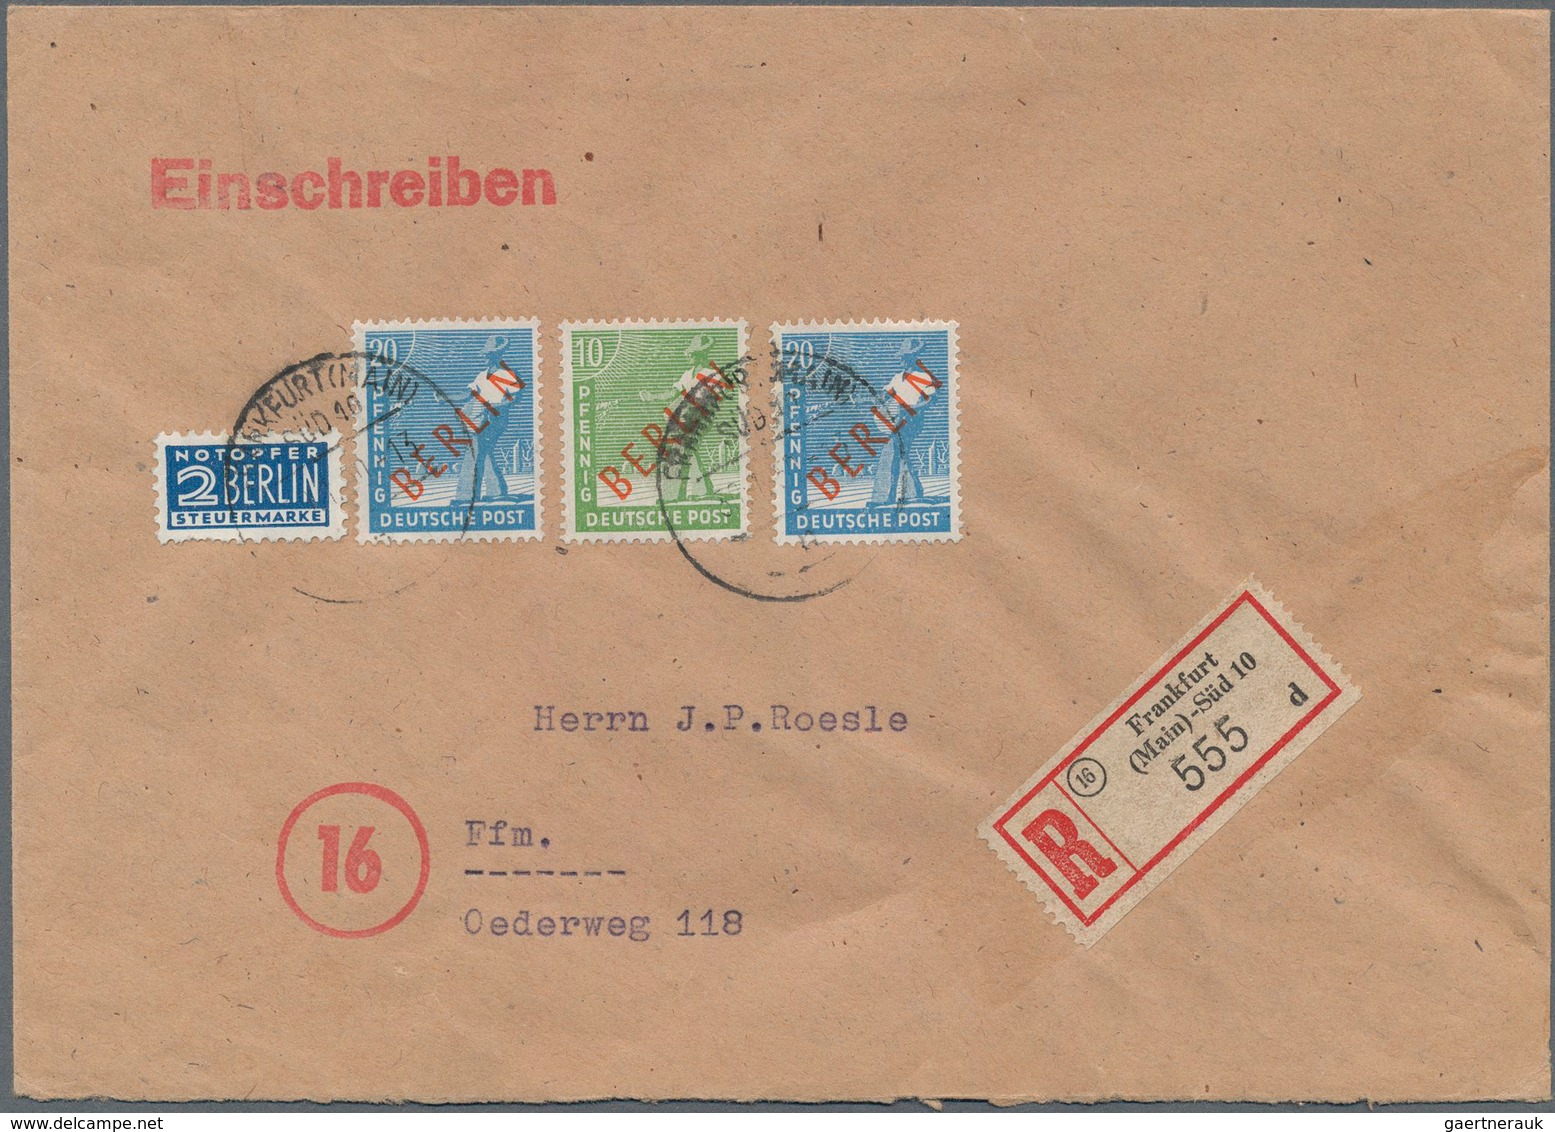 Berlin: 10 U. 2 Mal 20 Pf. Rotaufdruck Zusammen Auf Orts-R-Bf. Von Frankfurt/M. Vom 30.1.50 Sehr Sel - Briefe U. Dokumente